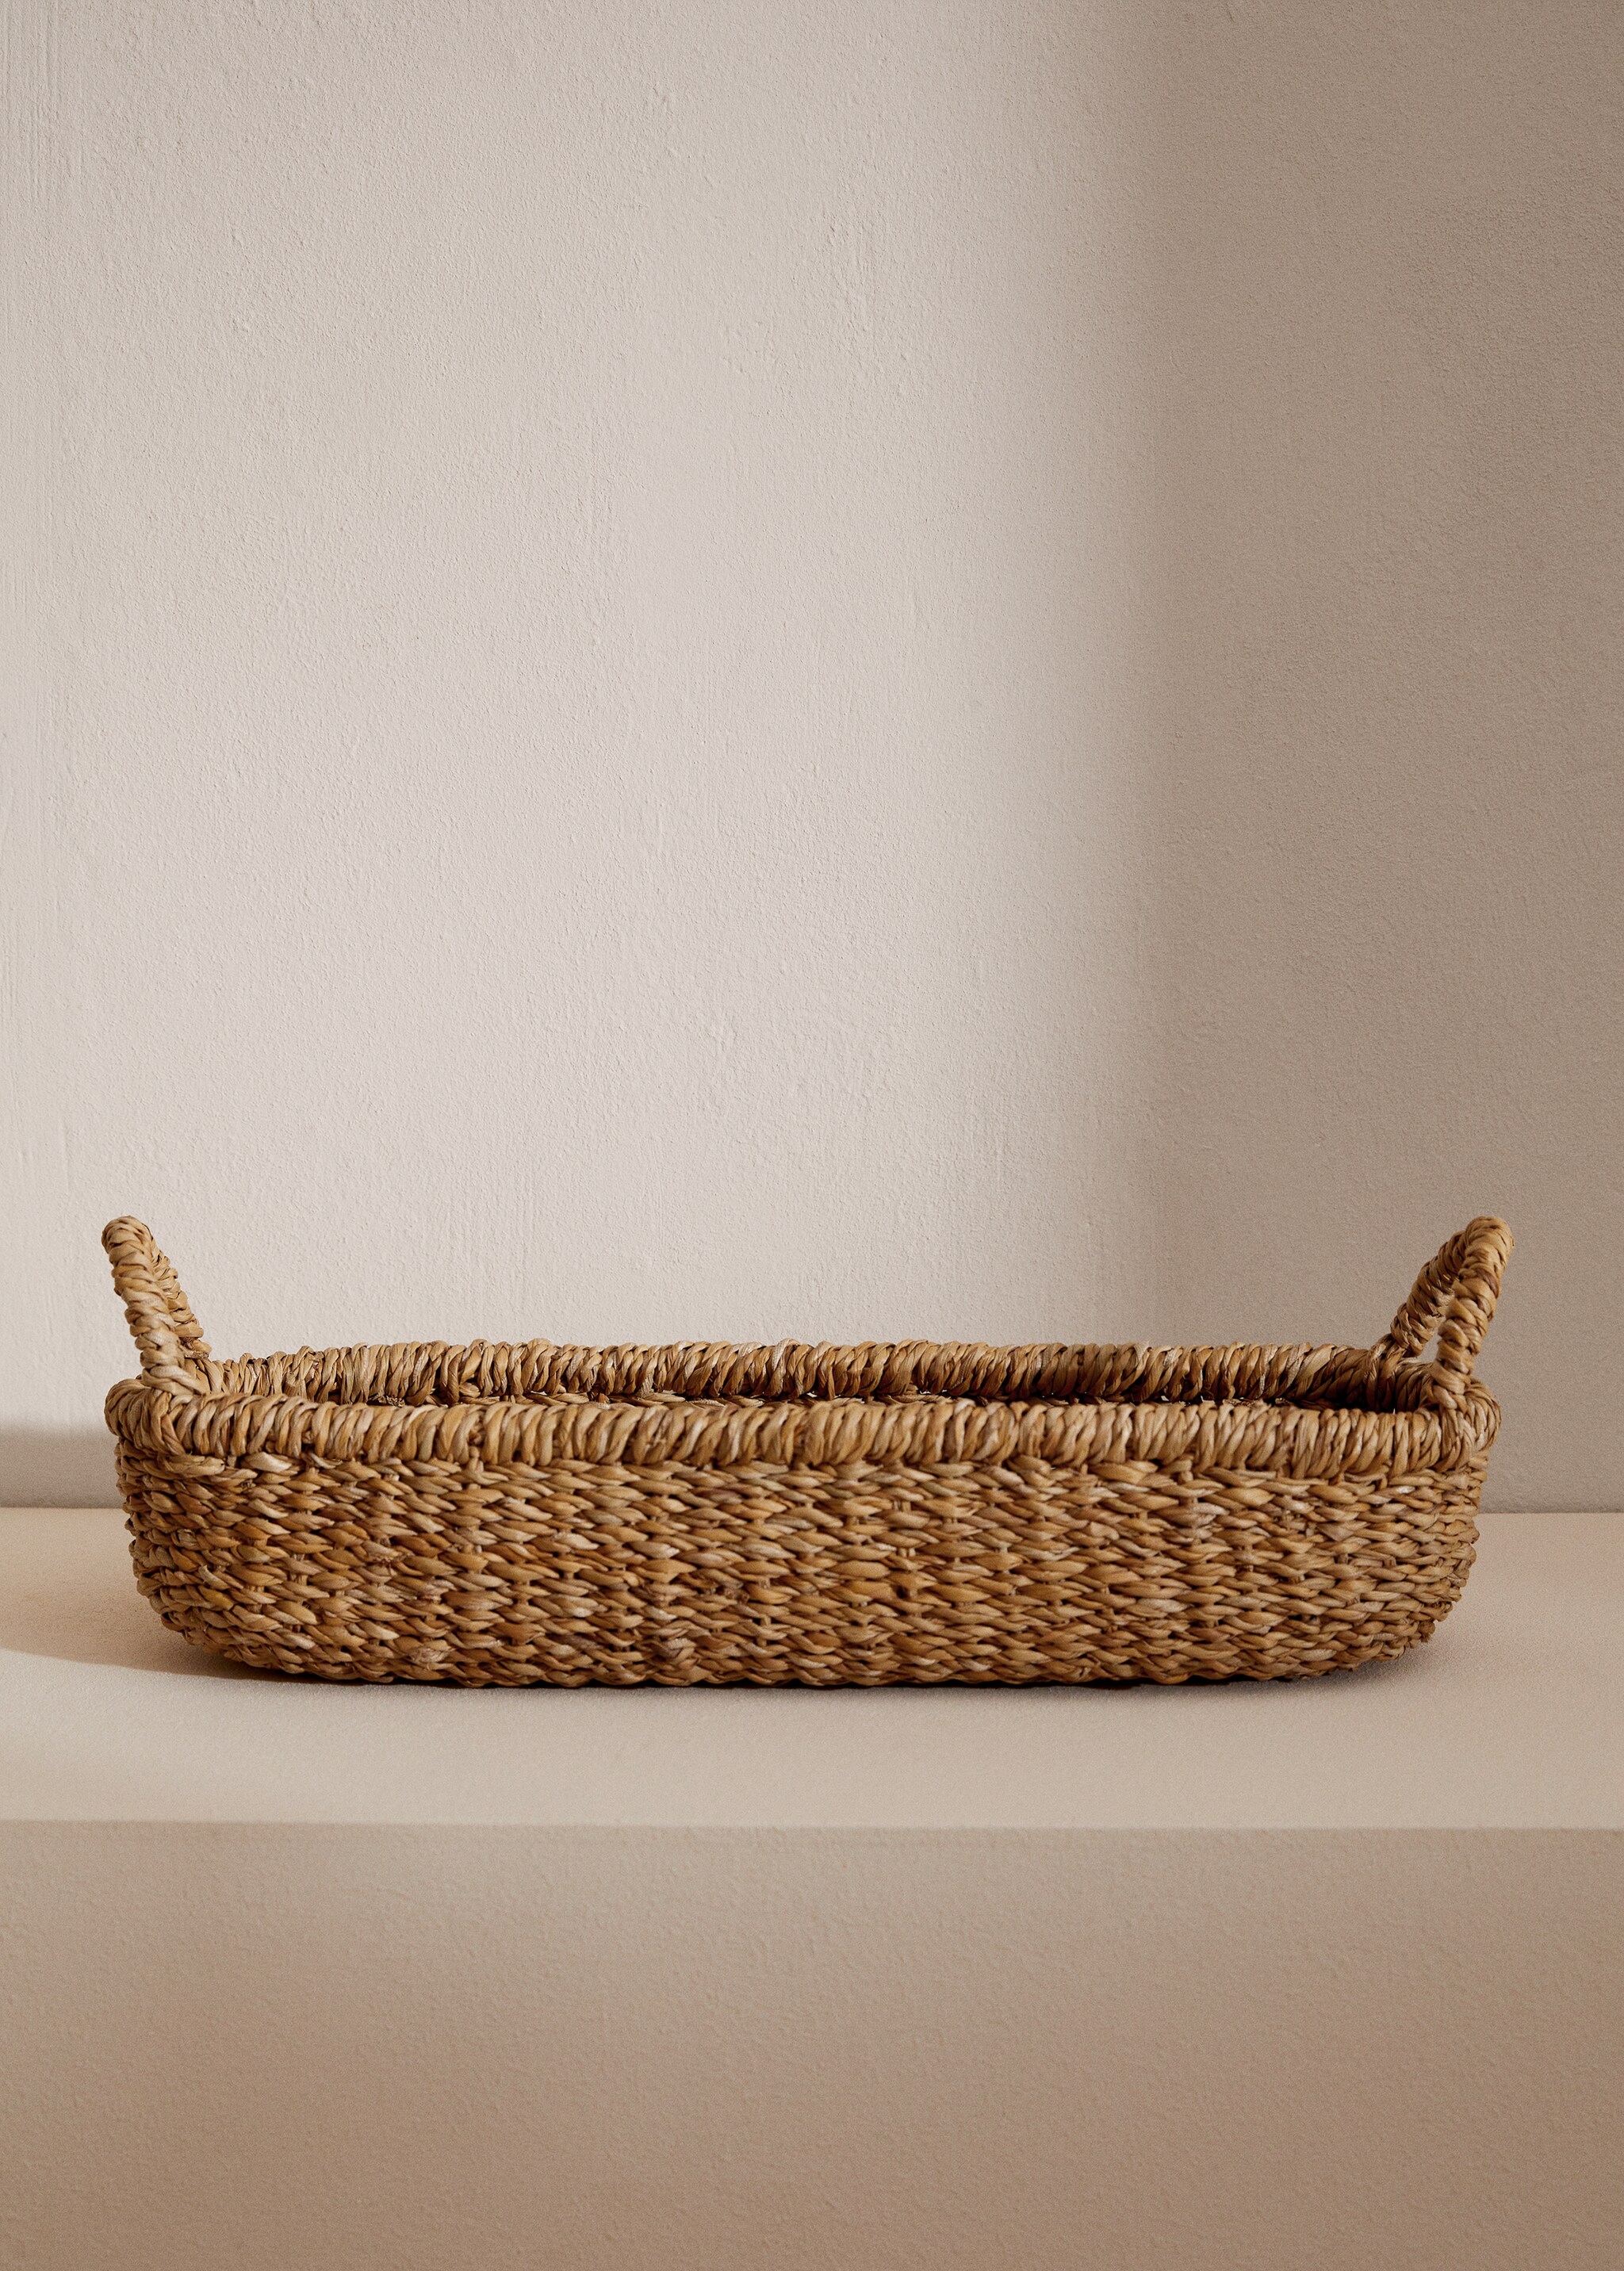 Rectangular basket handles - General plane